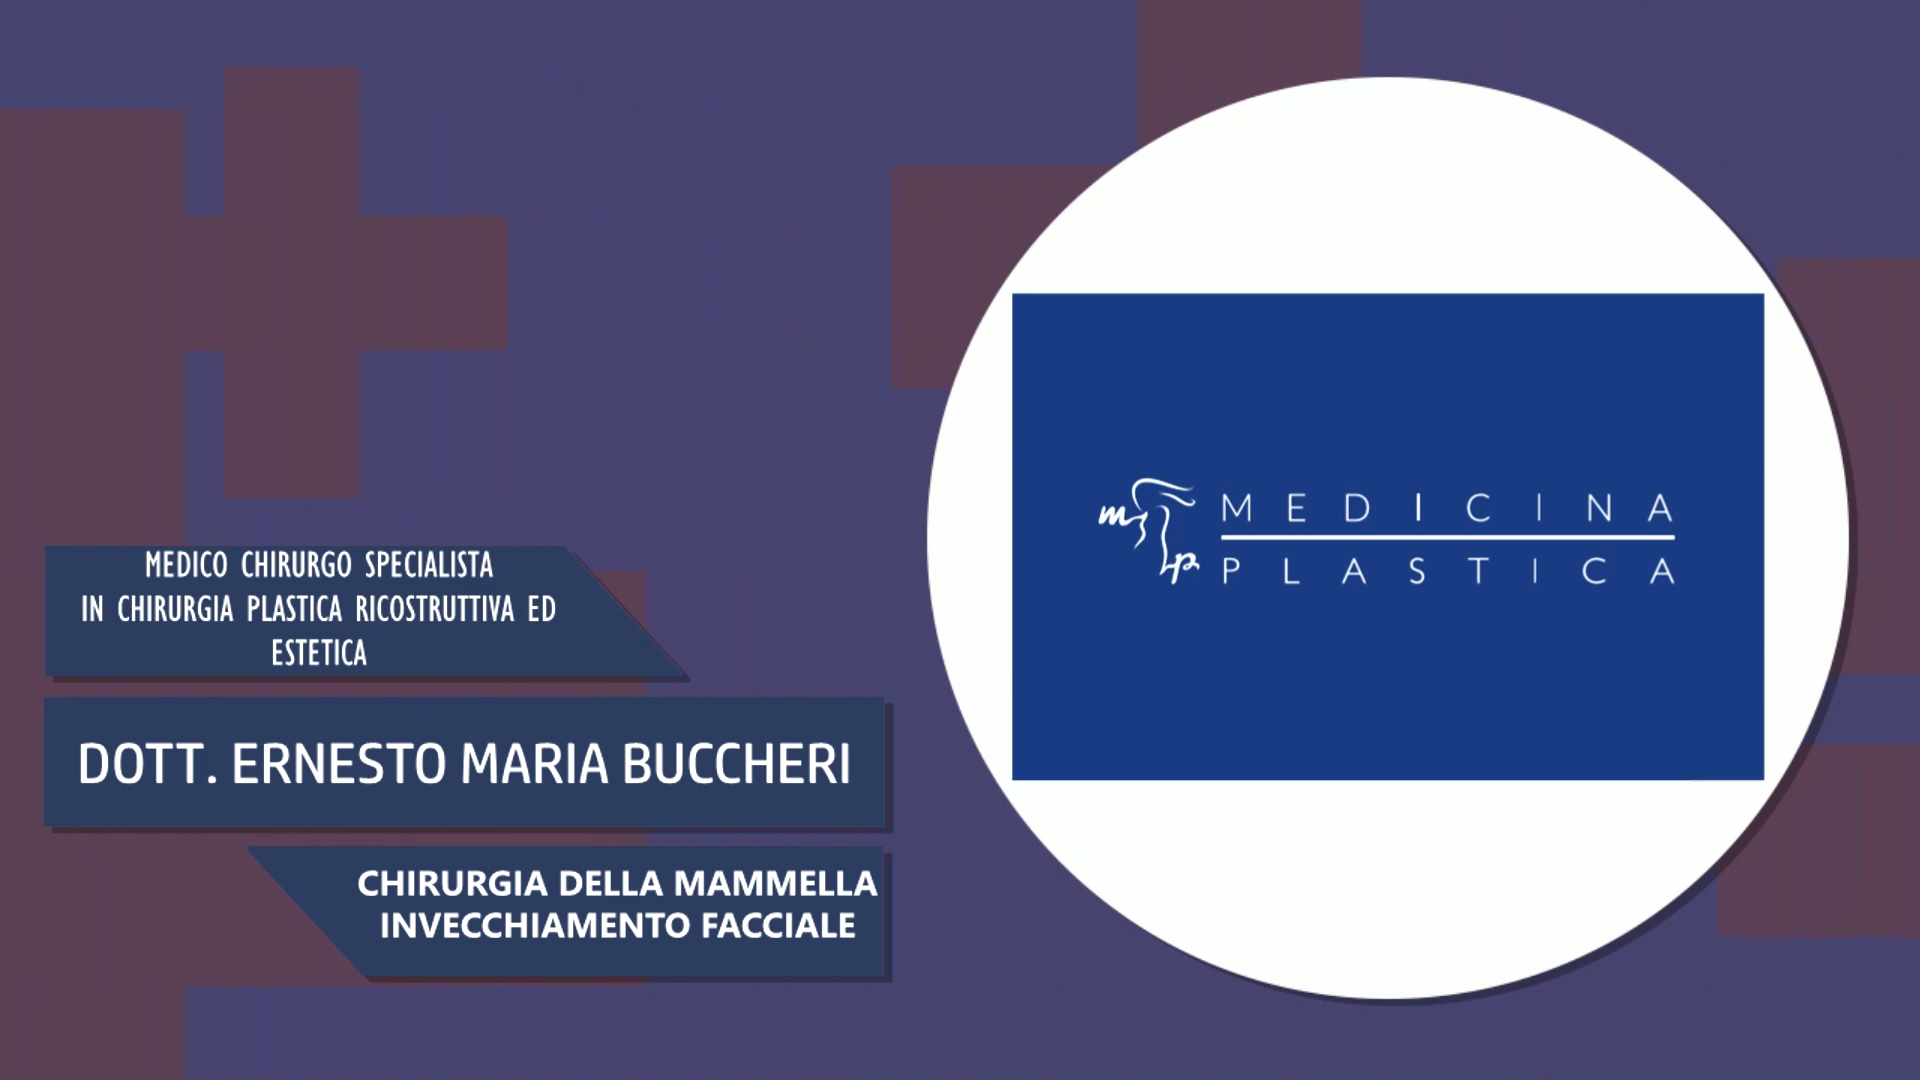 Intervista al Dott. Ernesto Maria Buccheri – Chirurgia della mammella & invecchiamento facciale